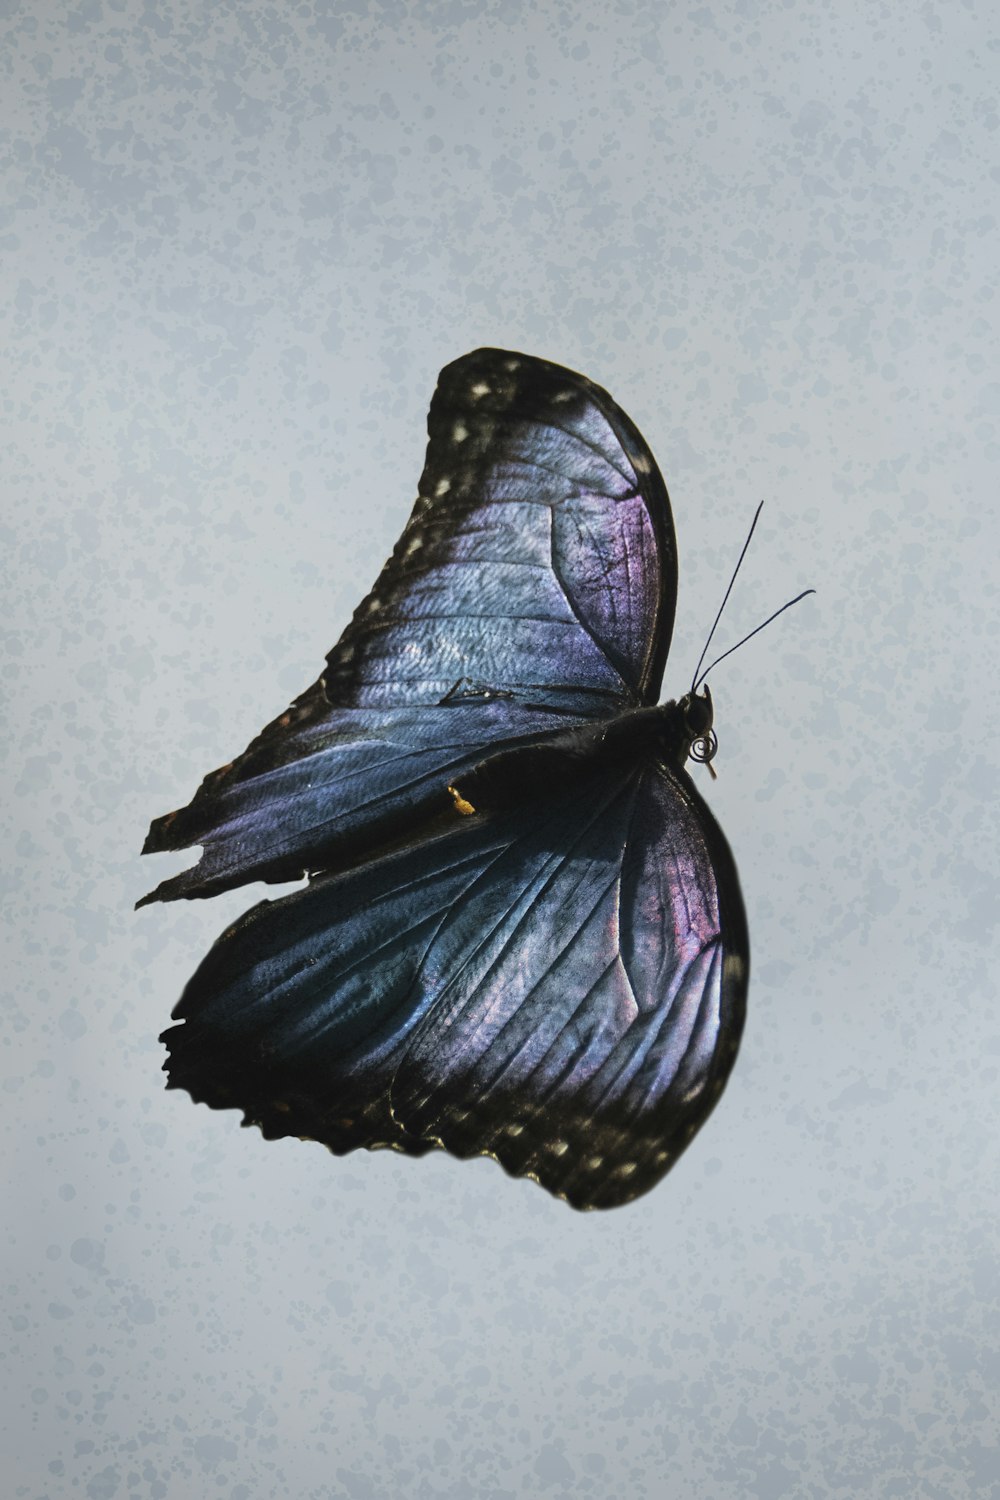 borboleta azul e preta na parede branca